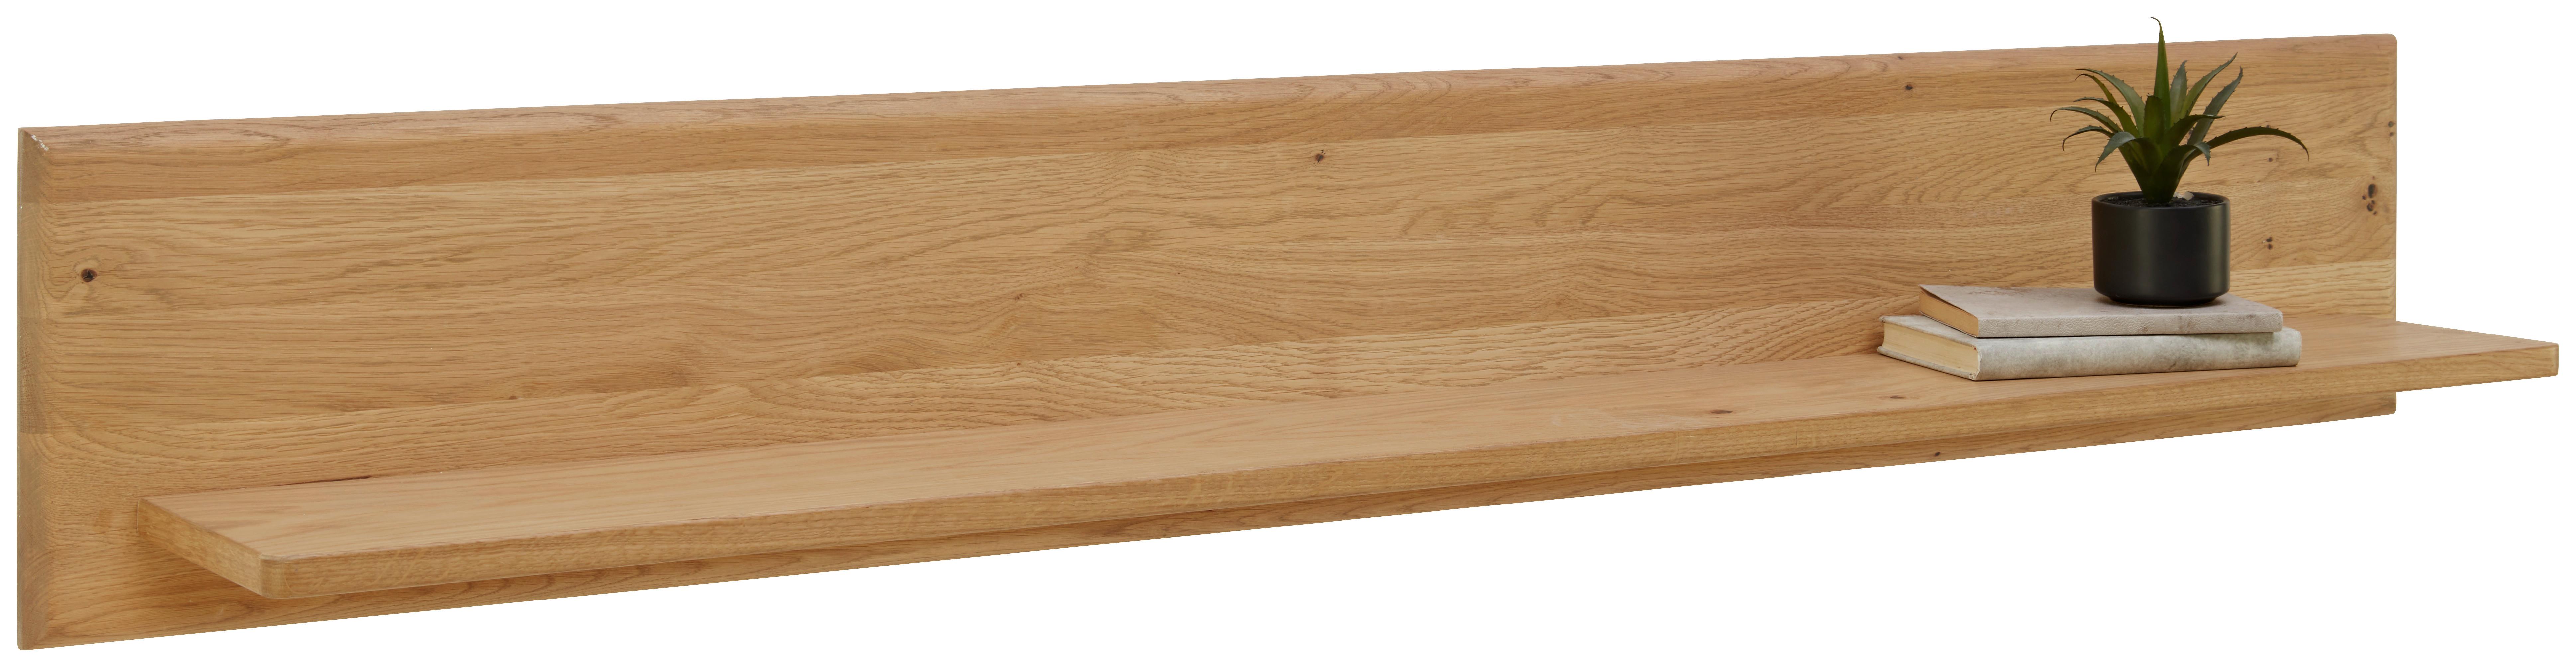 Wandboard in Wildeiche - Wildeiche, Modern, Holz/Holzwerkstoff (150/24/22cm) - Premium Living